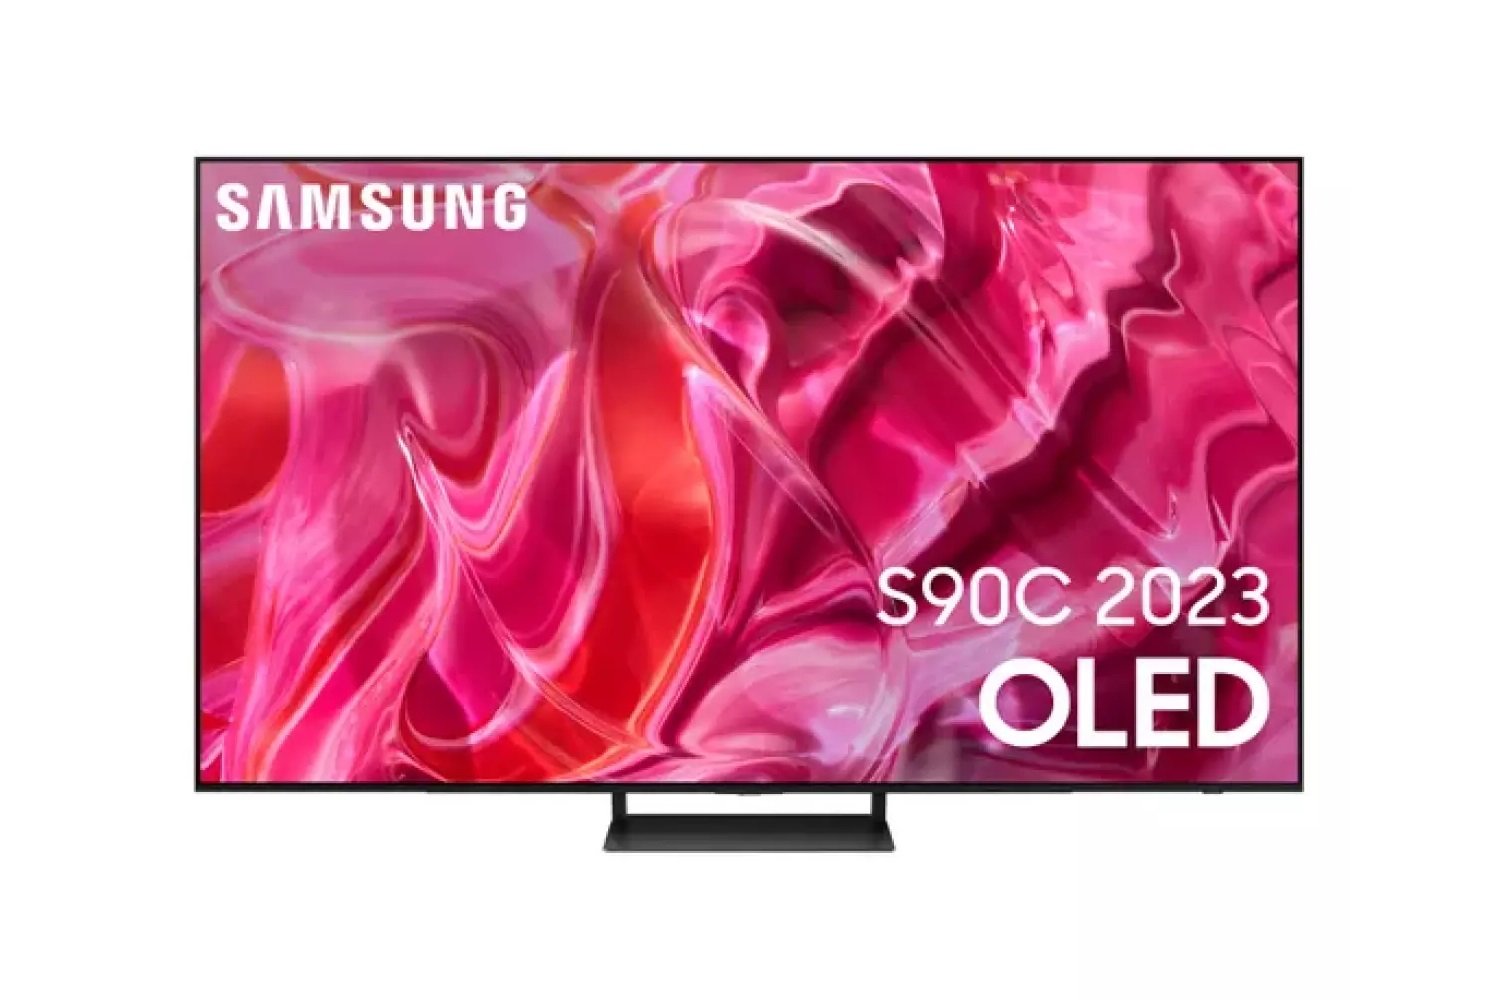 Envie d’une nouvelle TV ? Ce modèle OLED Samsung à prix cassé est une affaire en or 